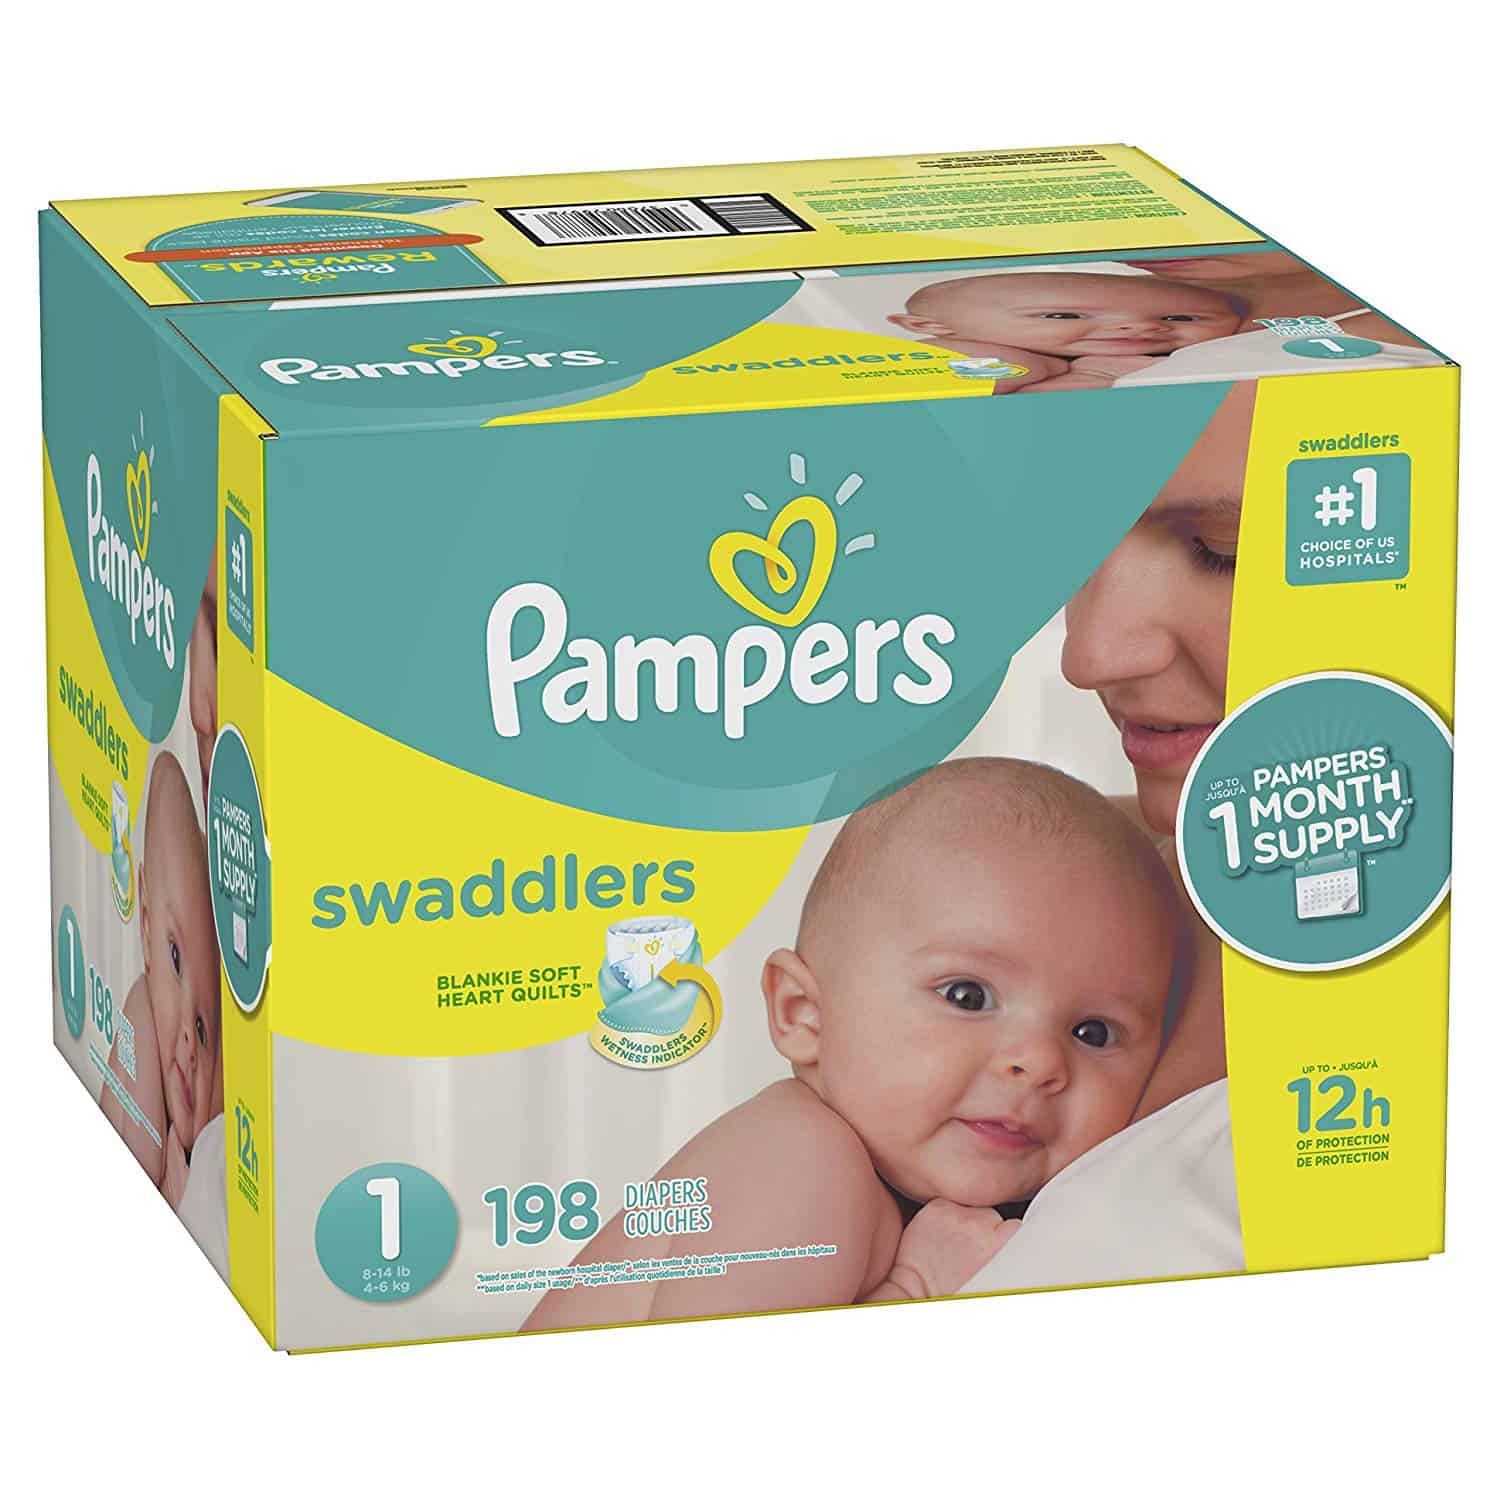 promo diapers newborn